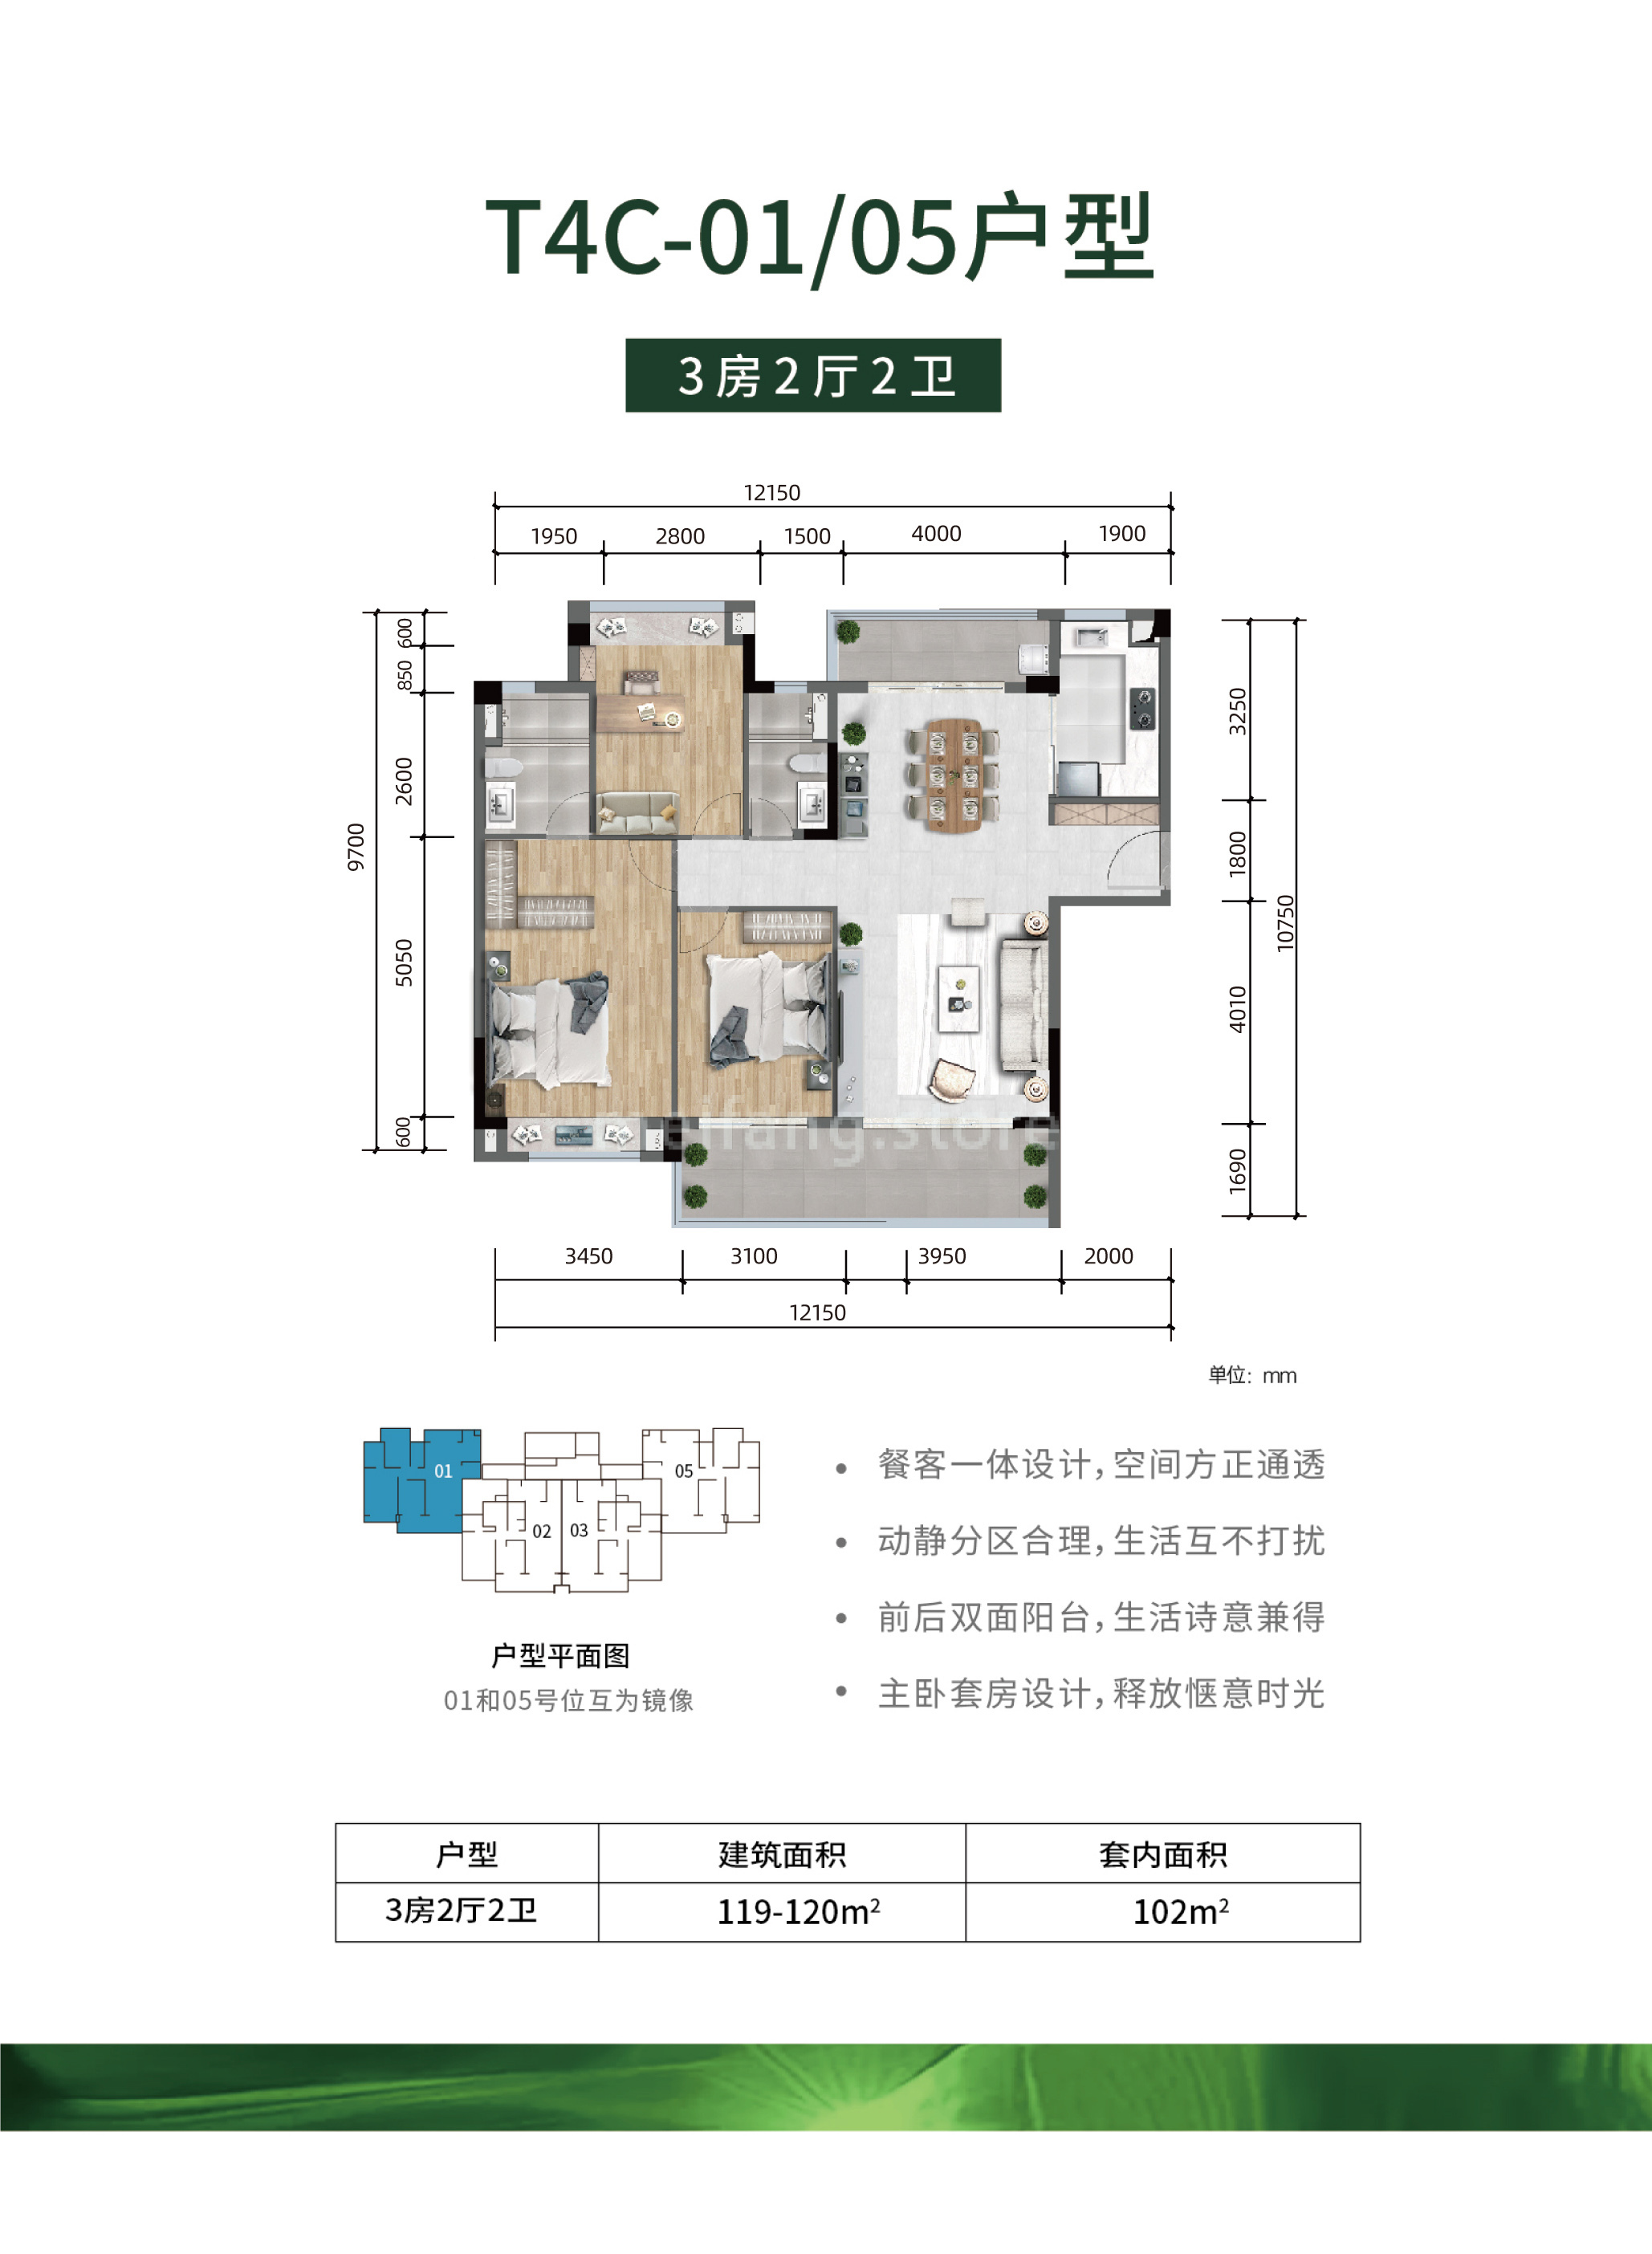 雅居乐清水湾清澜 洋房 T4C-01/05户型 3房2厅2卫 建筑面积119-120m²